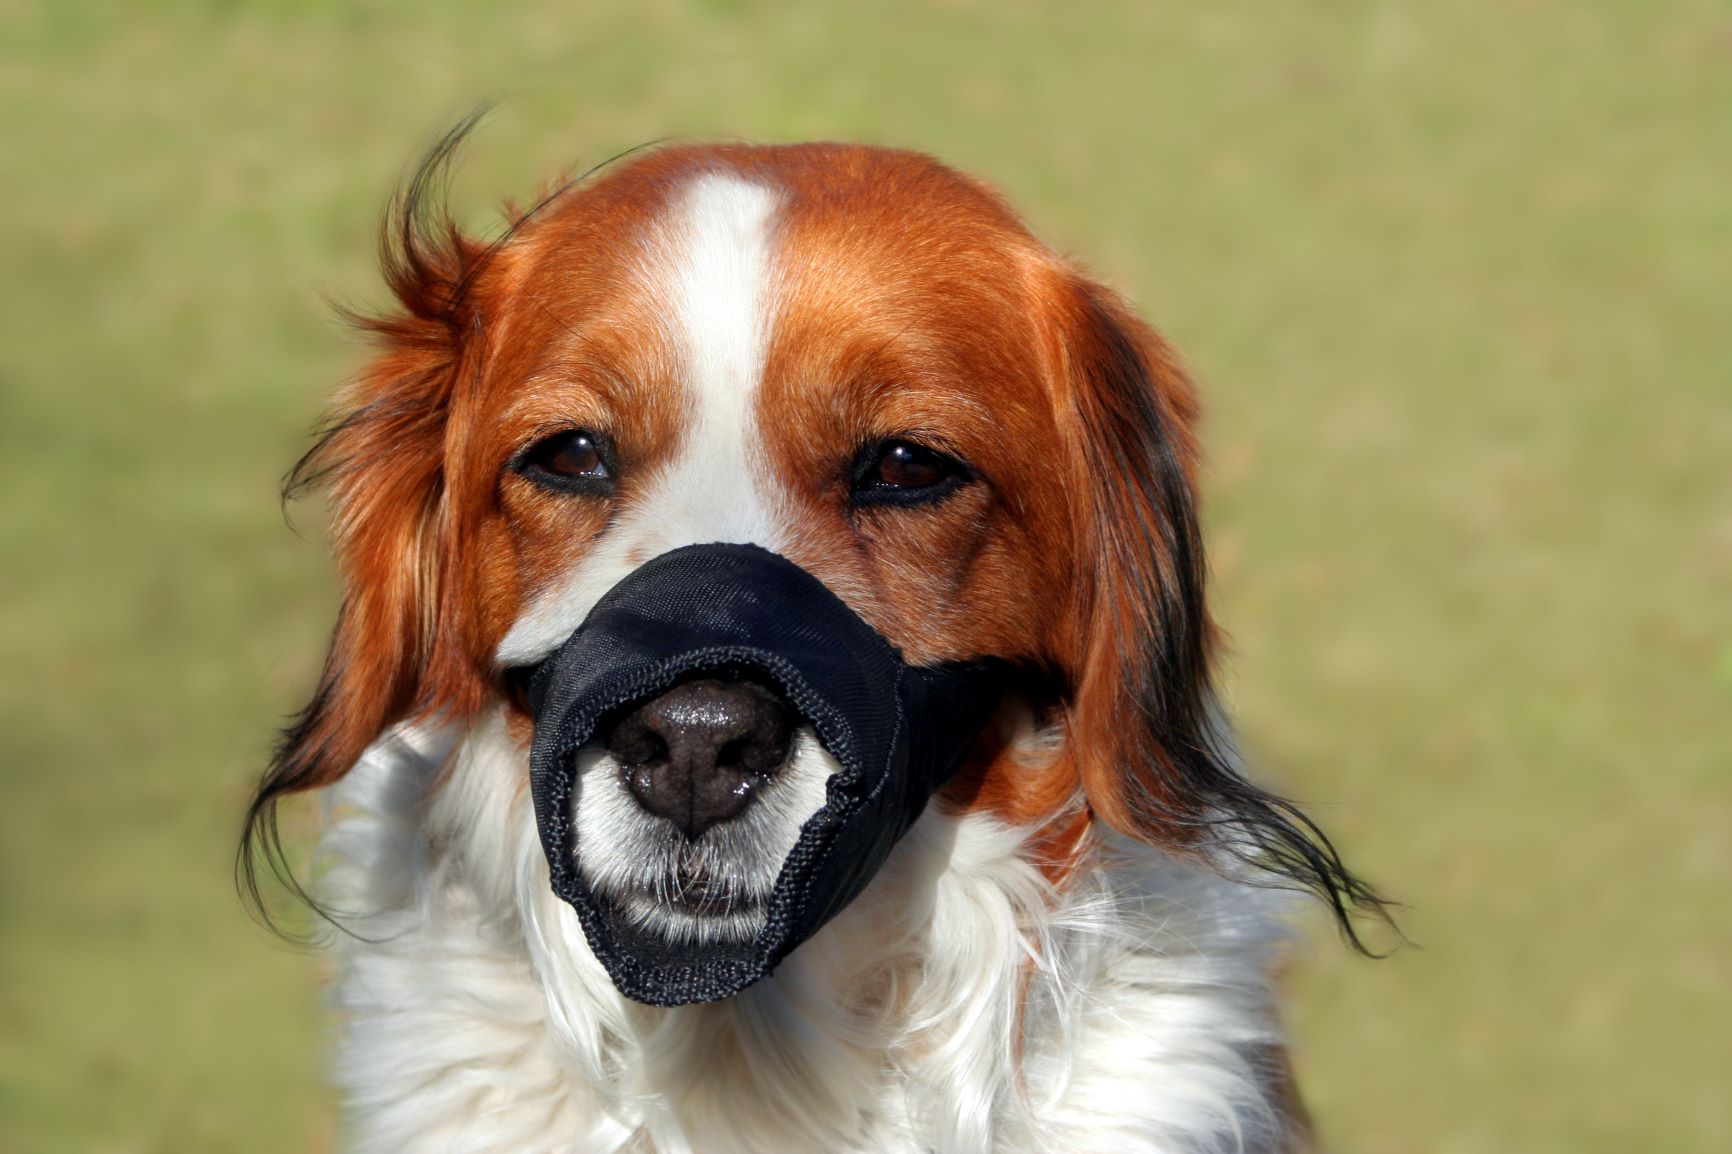 La muselière pour chien en nylon peut entraver la respiration de votre compagnon